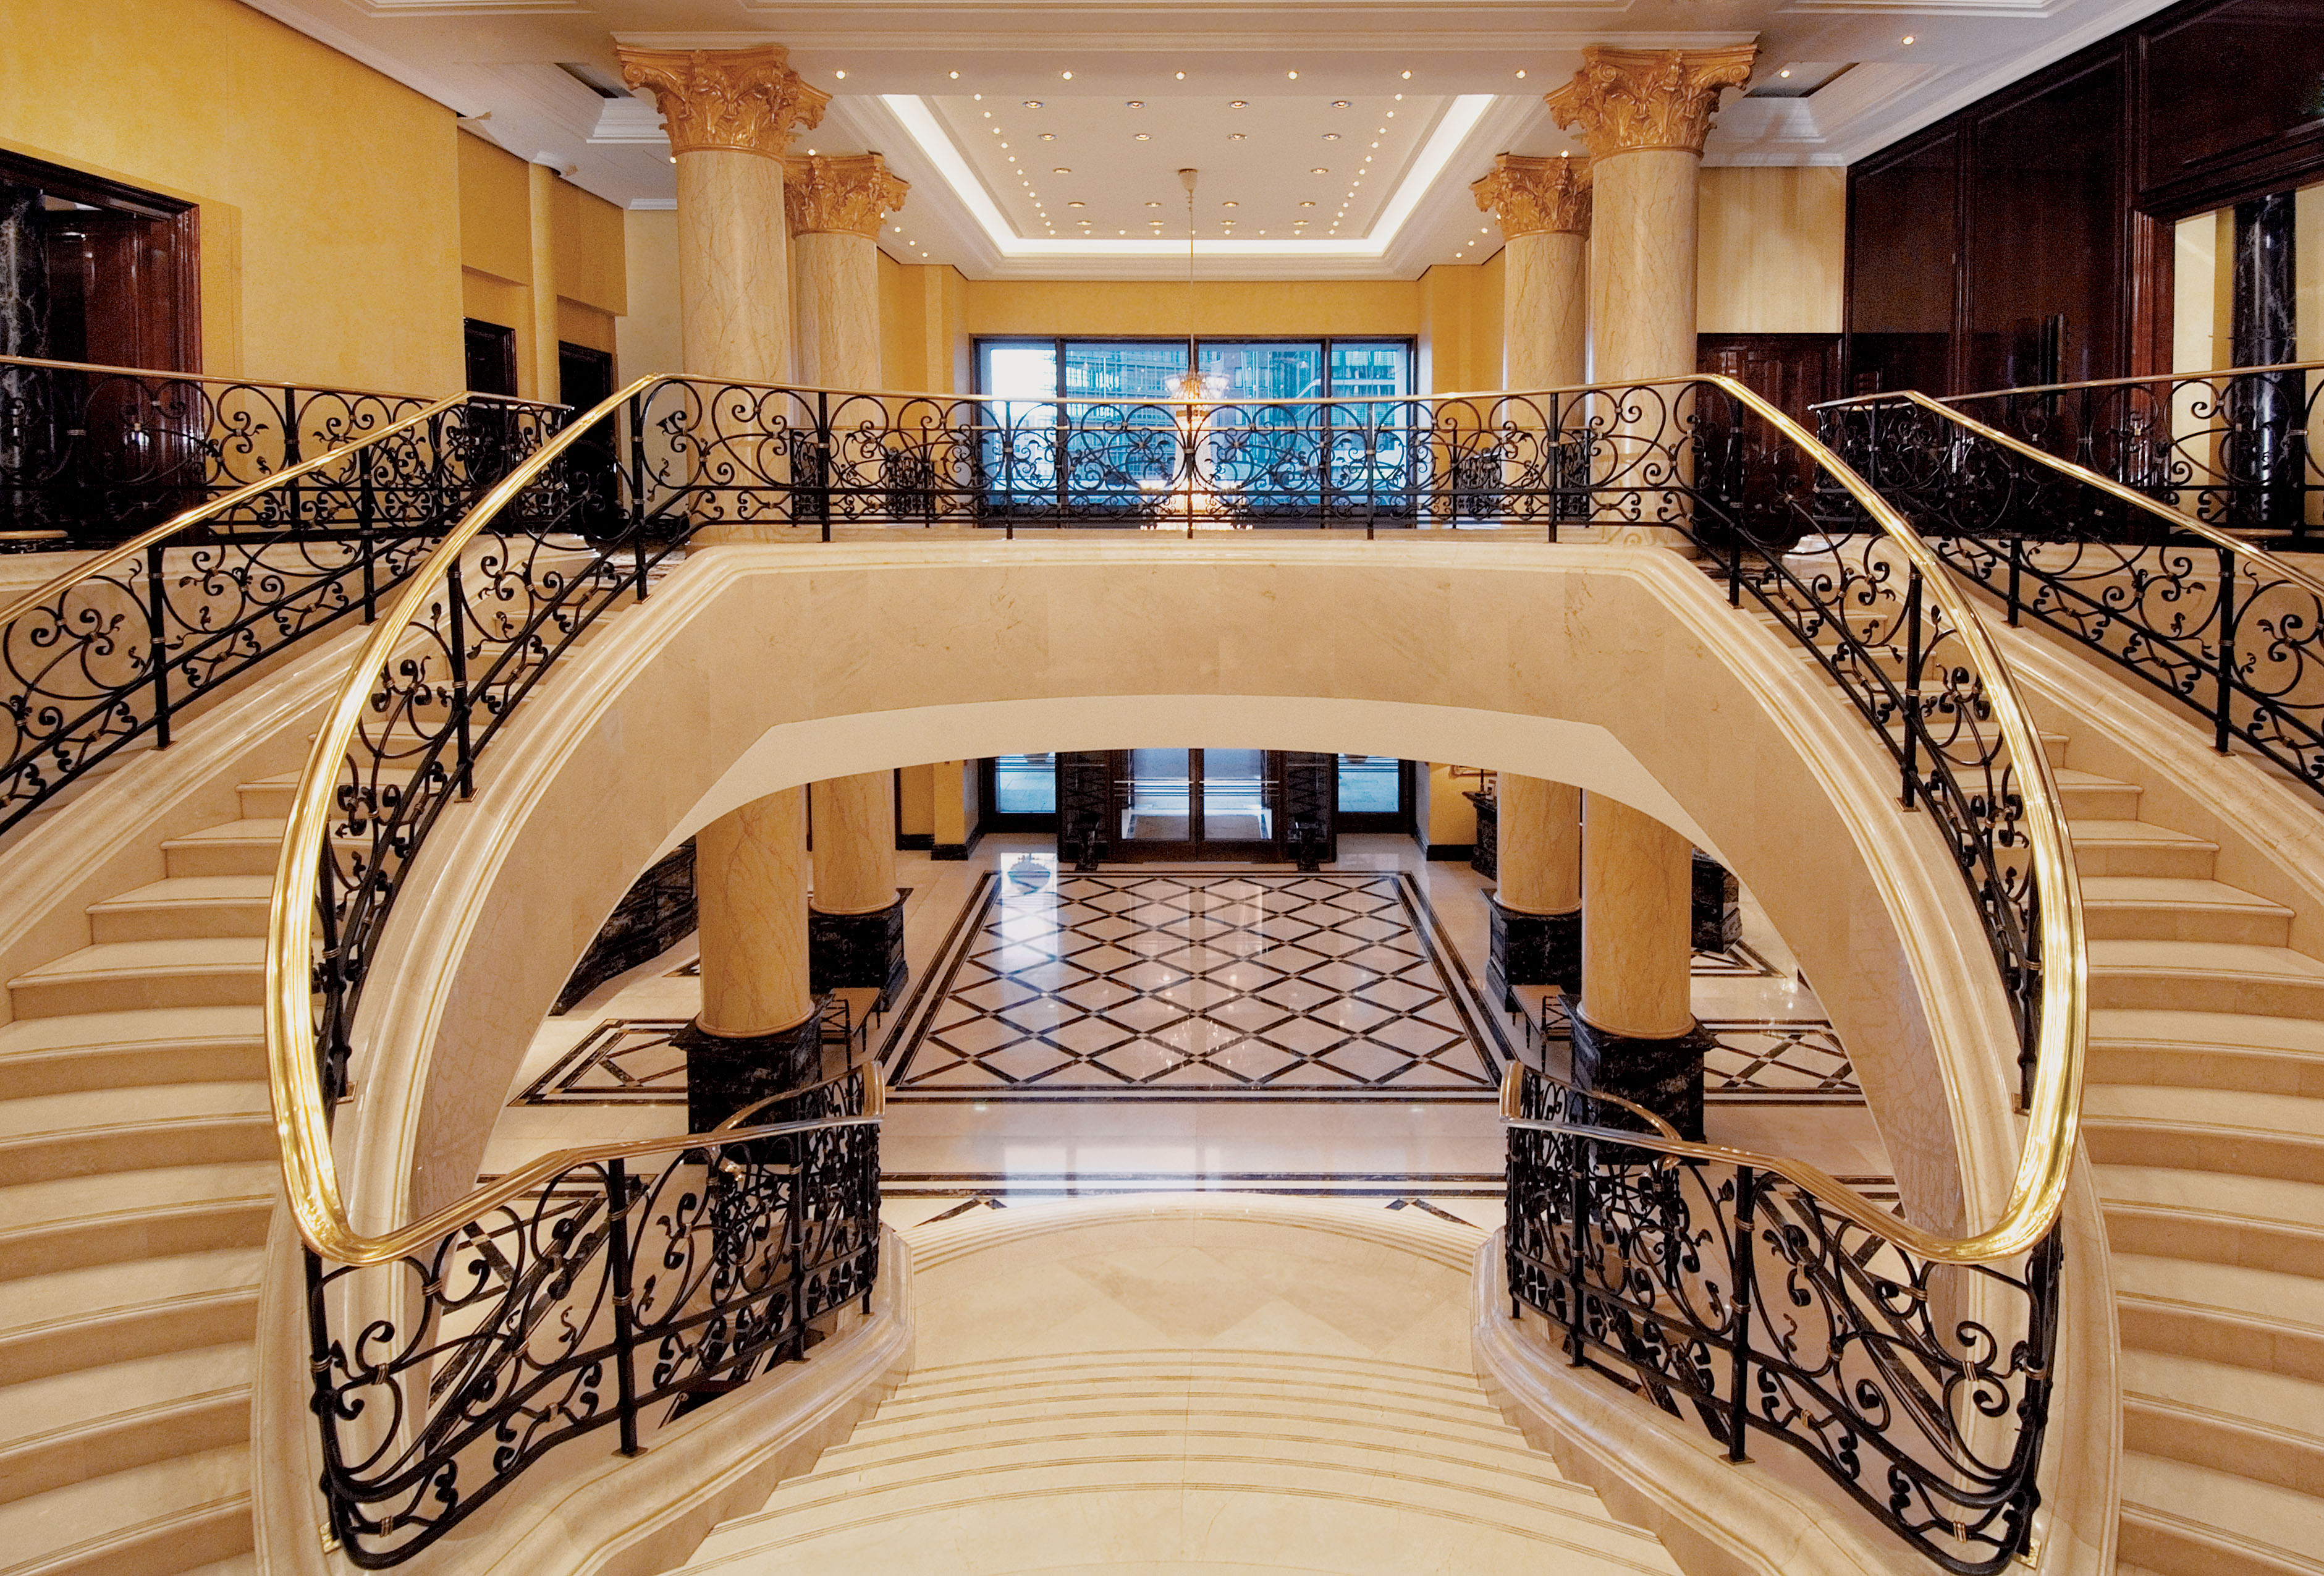 7 хол. Отель Ритц Карлтон лестница. The Ritz Carlton Moscow лестница. Парадная лестница гостиницы Националь в Москве. Красивые лестницы.